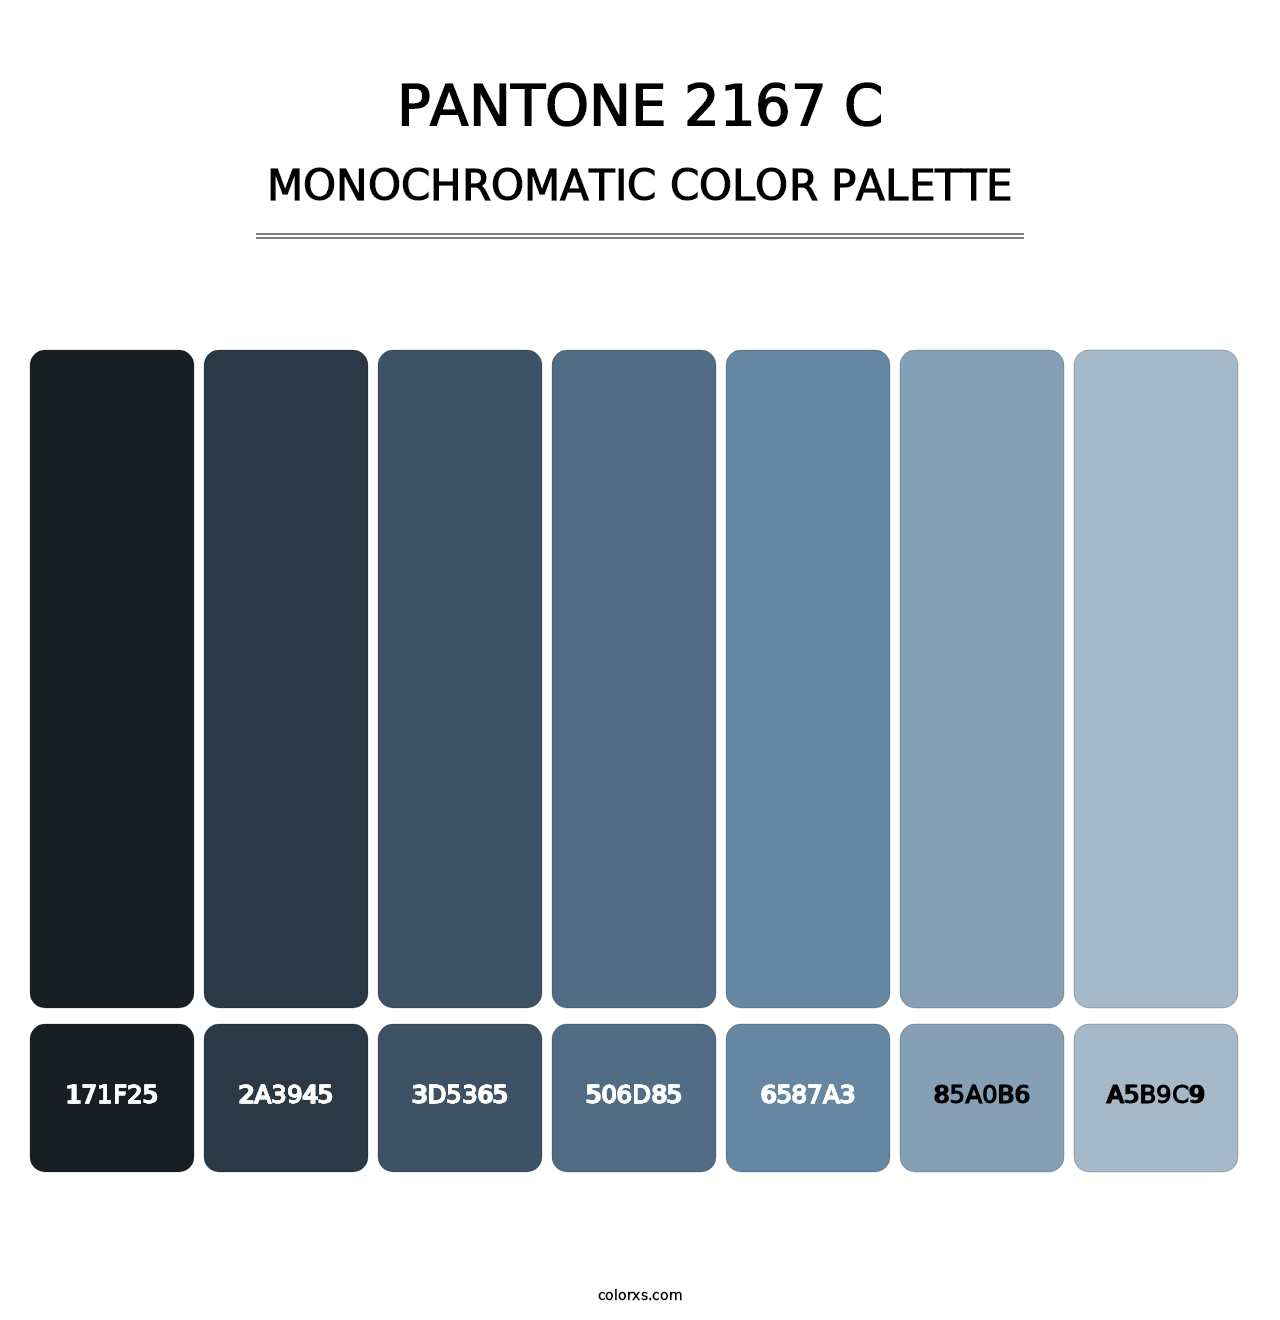 PANTONE 2167 C - Monochromatic Color Palette